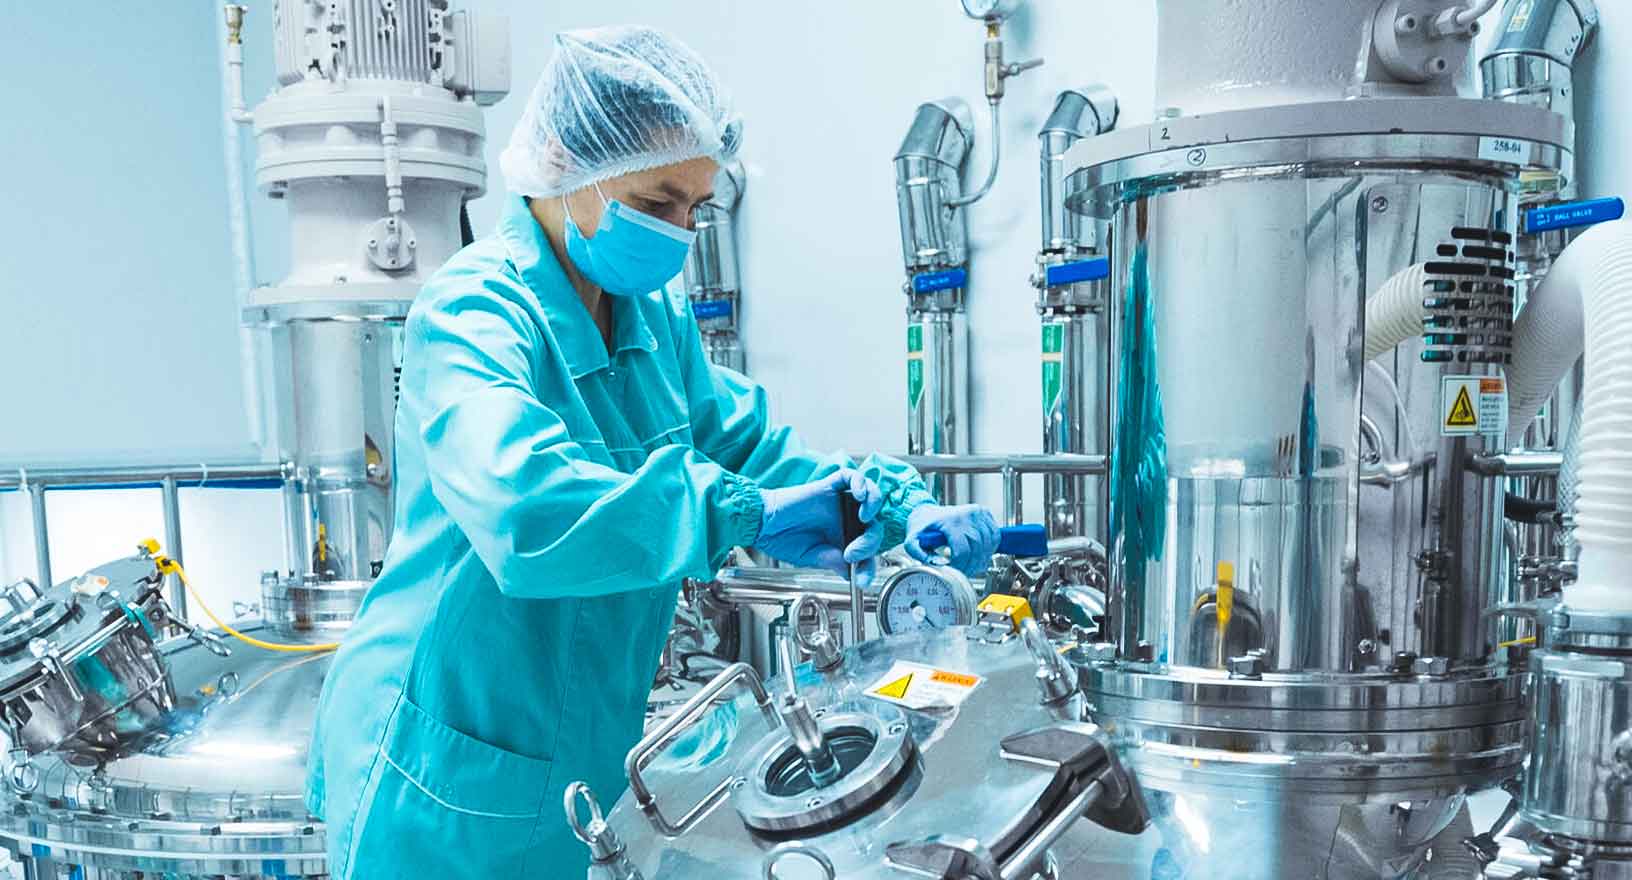 Technicien pharmaceutique dans un environnement stérile au sein d’une usine de production pharmaceutique. 